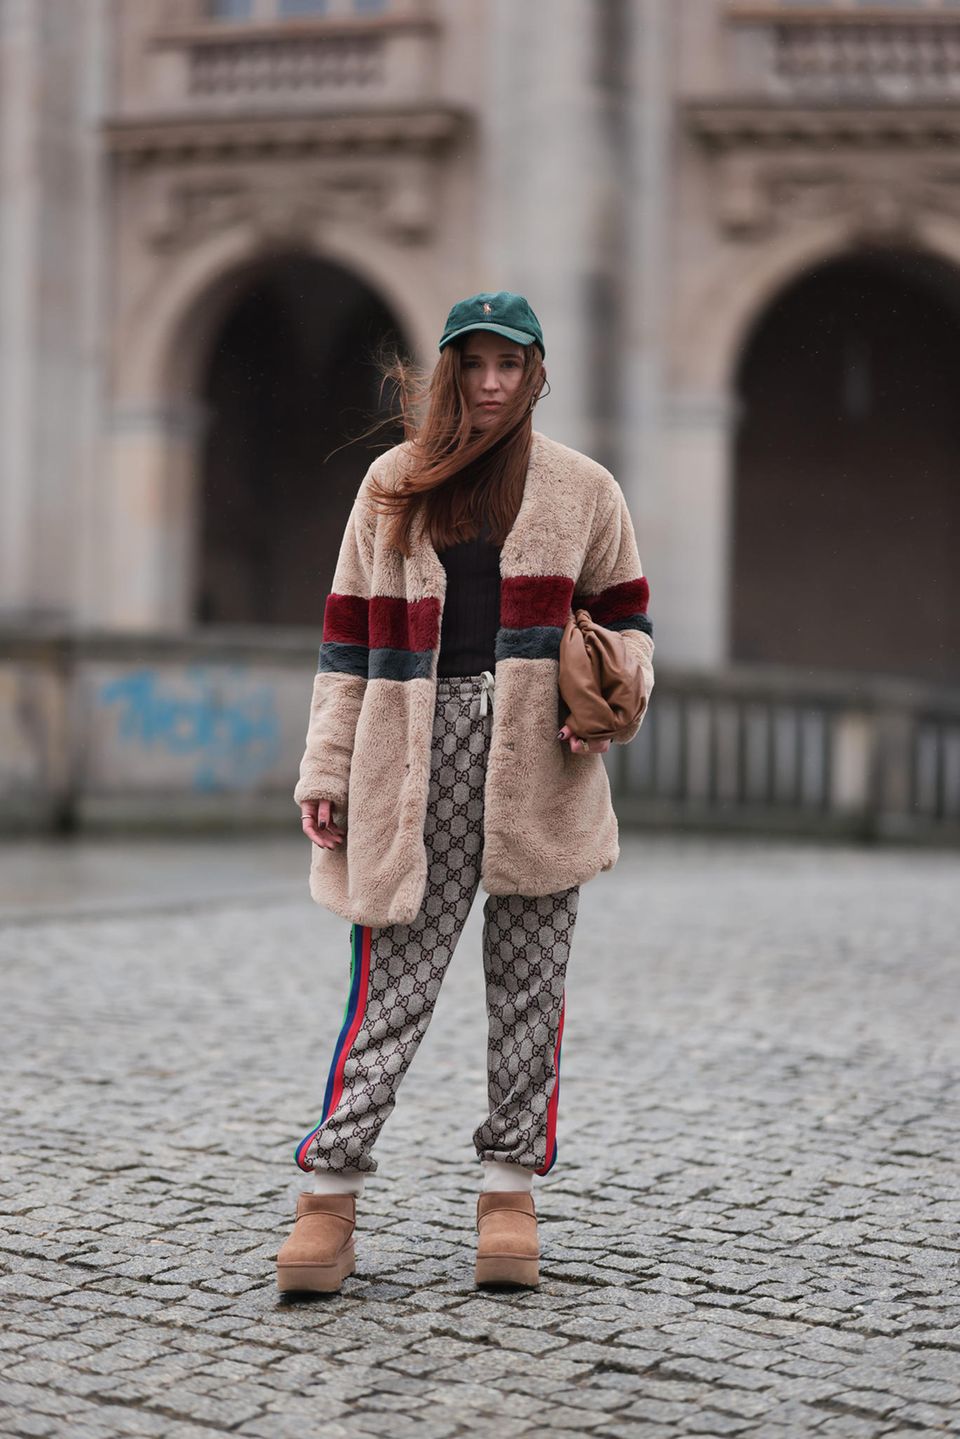 Komfort und Mode schließen sich nicht aus, das beweist Dariia Prokopovych abseits der Fashion Week in Jogginghose von Gucci, Fell-Boots von UGG, einer Cap von Ralph Lauren und einer warmen Fake-Fur-Jacke. 